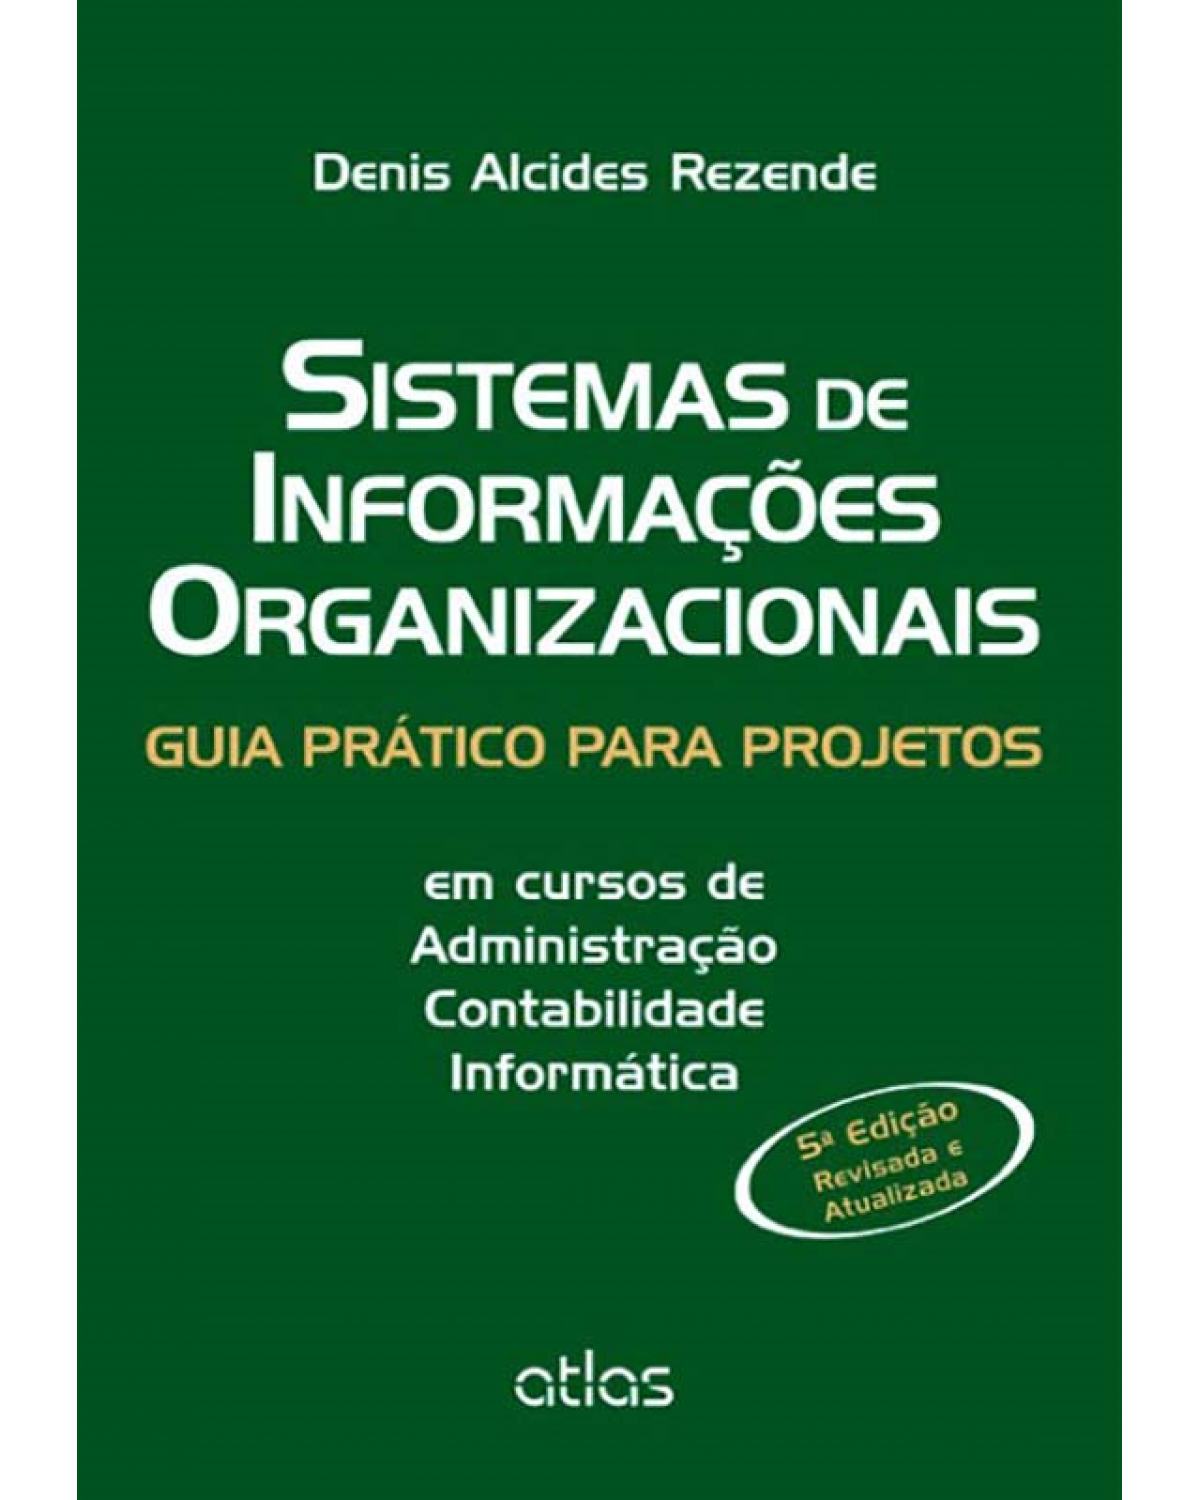 Sistemas de informações organizacionais - Guia prático para projetos em cursos de administração, contabilidade, informática - 5ª Edição | 2013